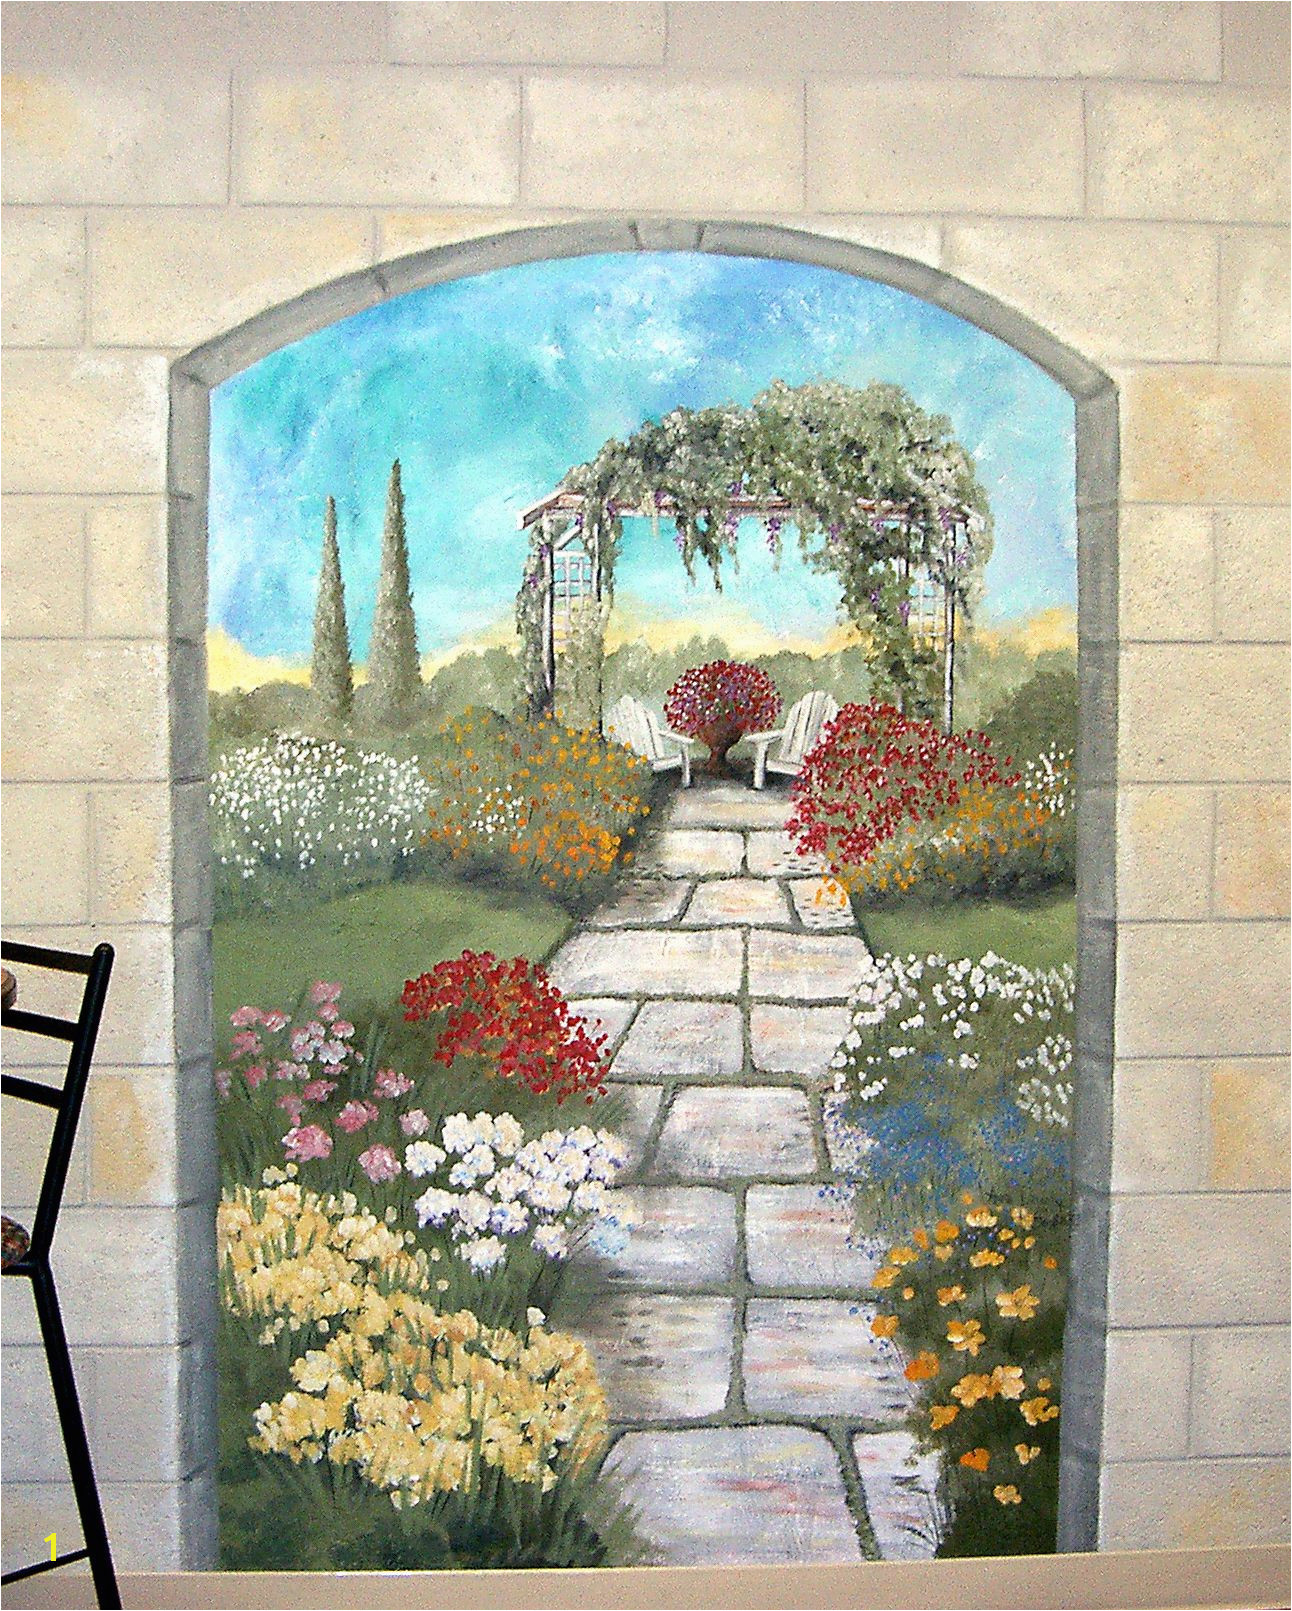 Paint Murals On Walls Garden Mural On A Cement Block Wall Colorful Flower Garden Mural